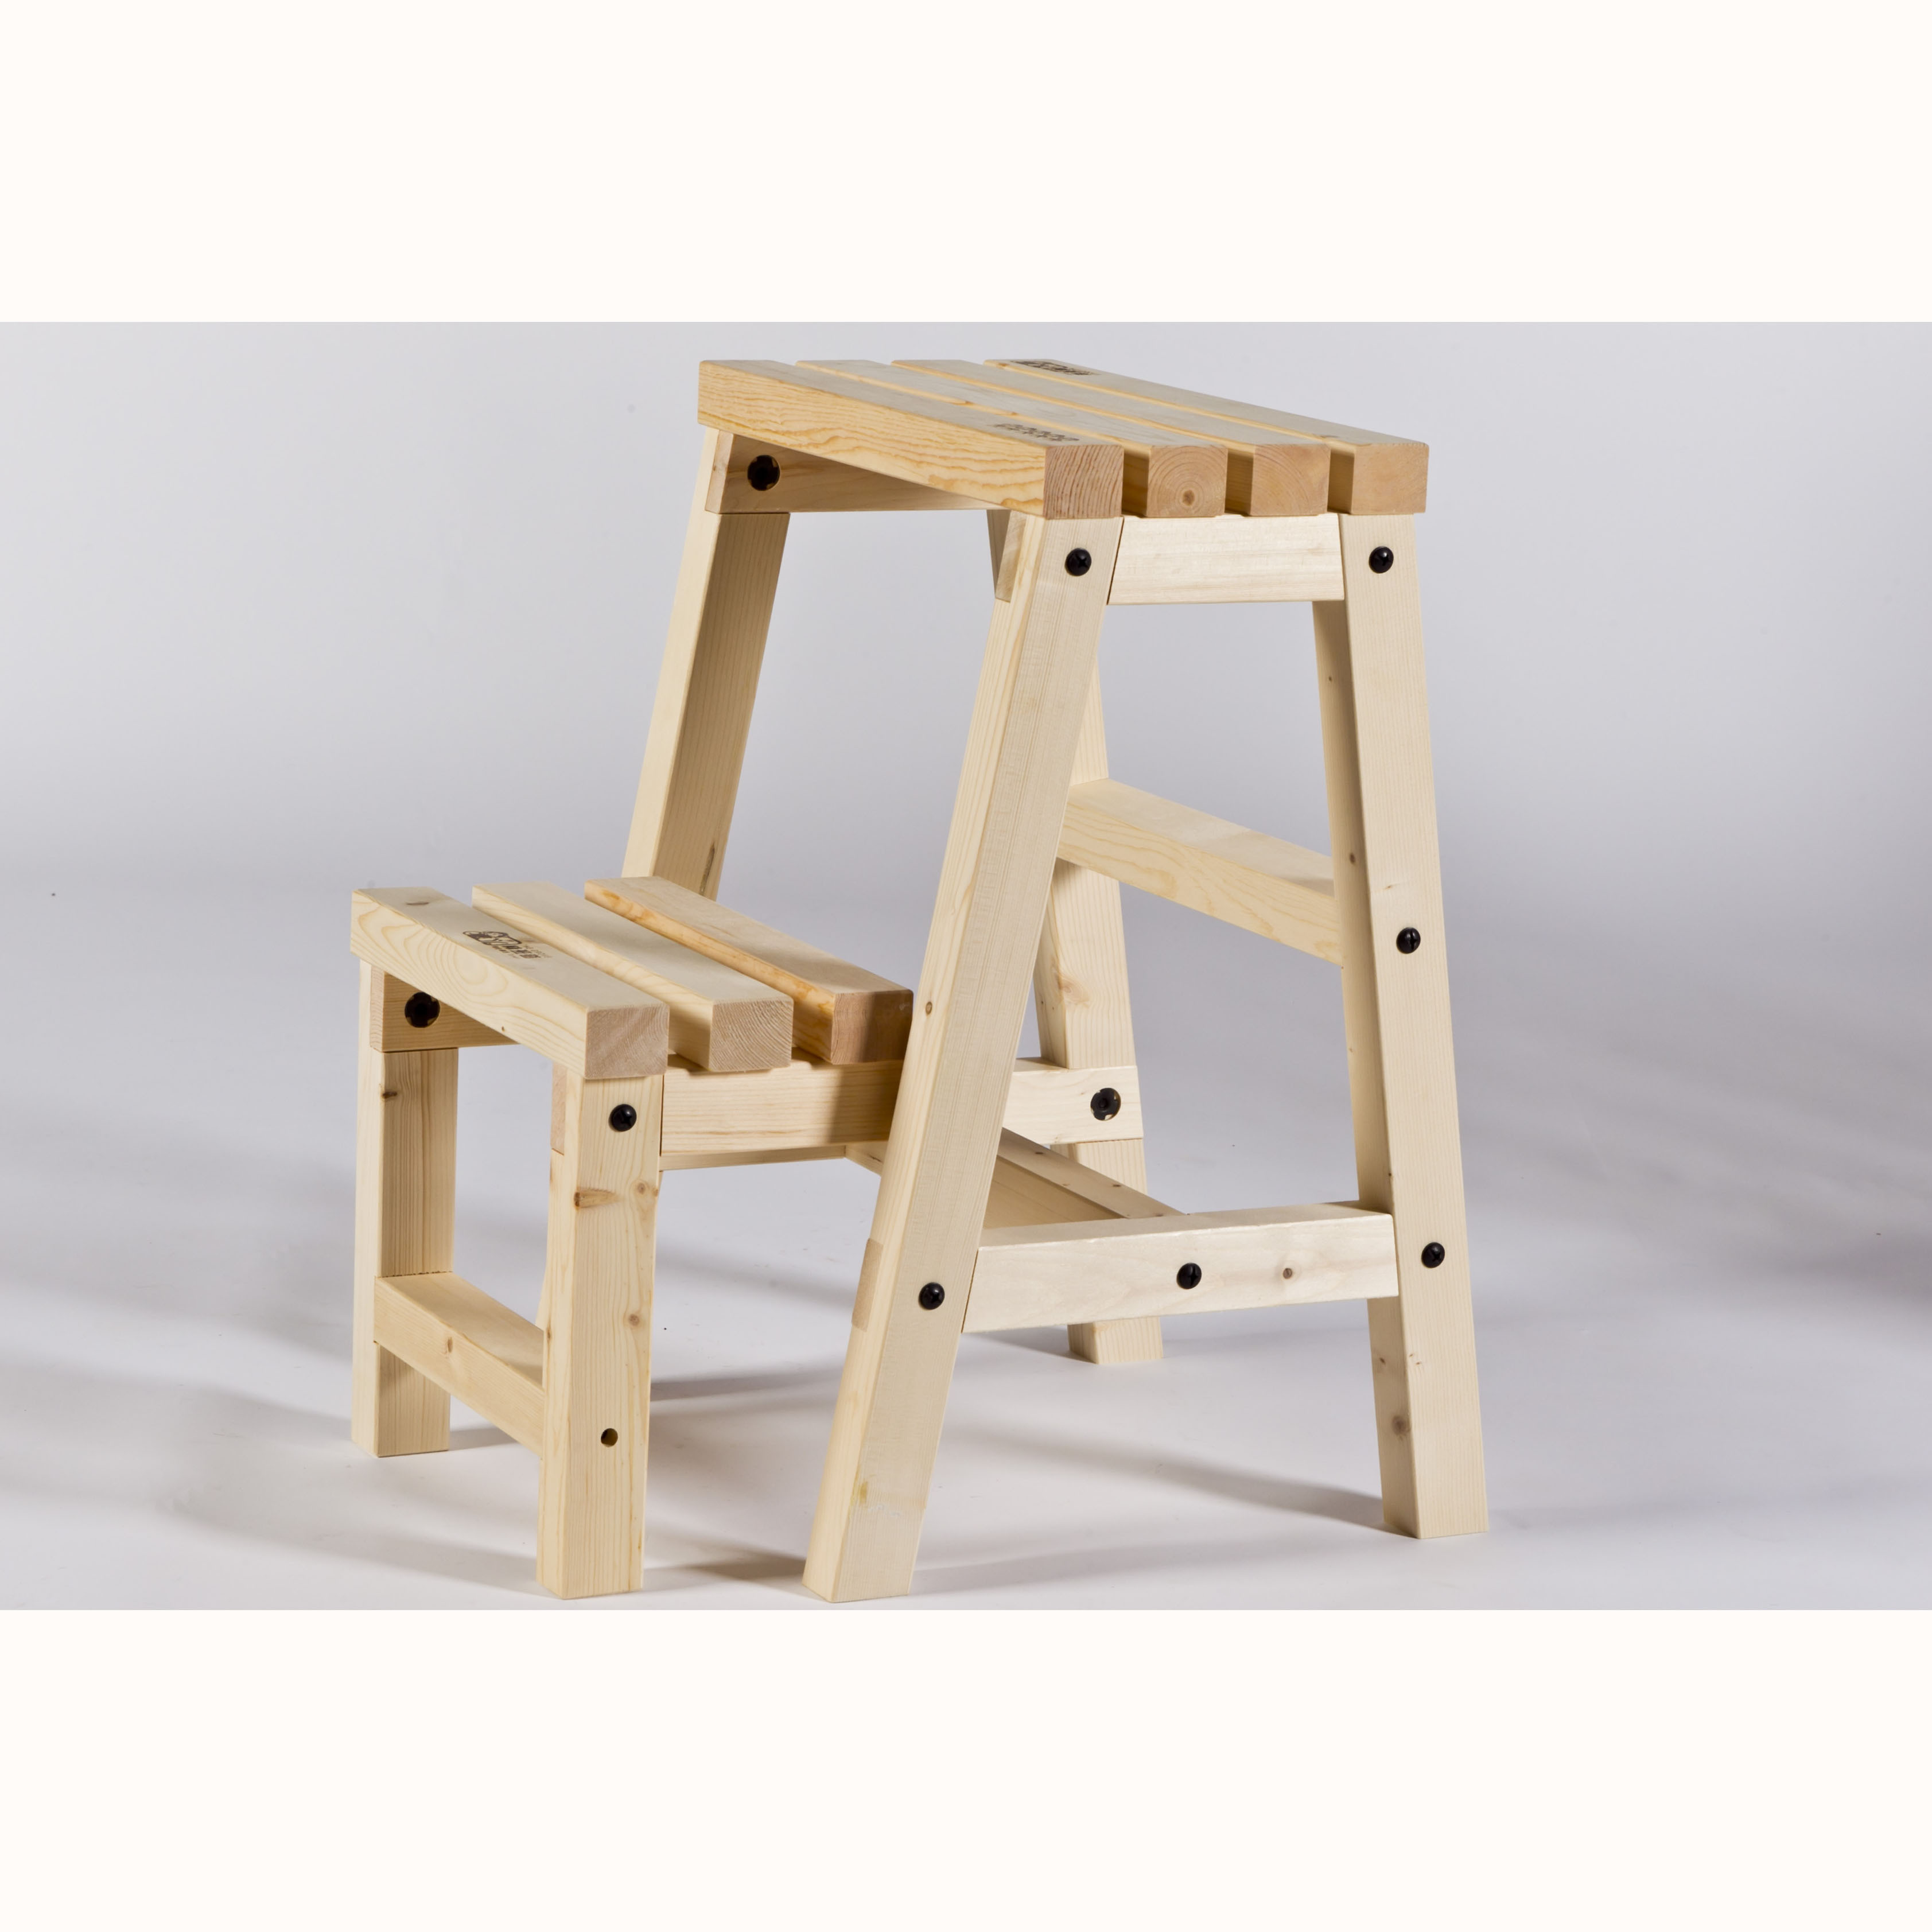 林班道木工體驗工廠-樓梯椅、弧面板凳、日式椅、玄關椅、方形高腳椅 DIY組 (免運) (廠商直送)